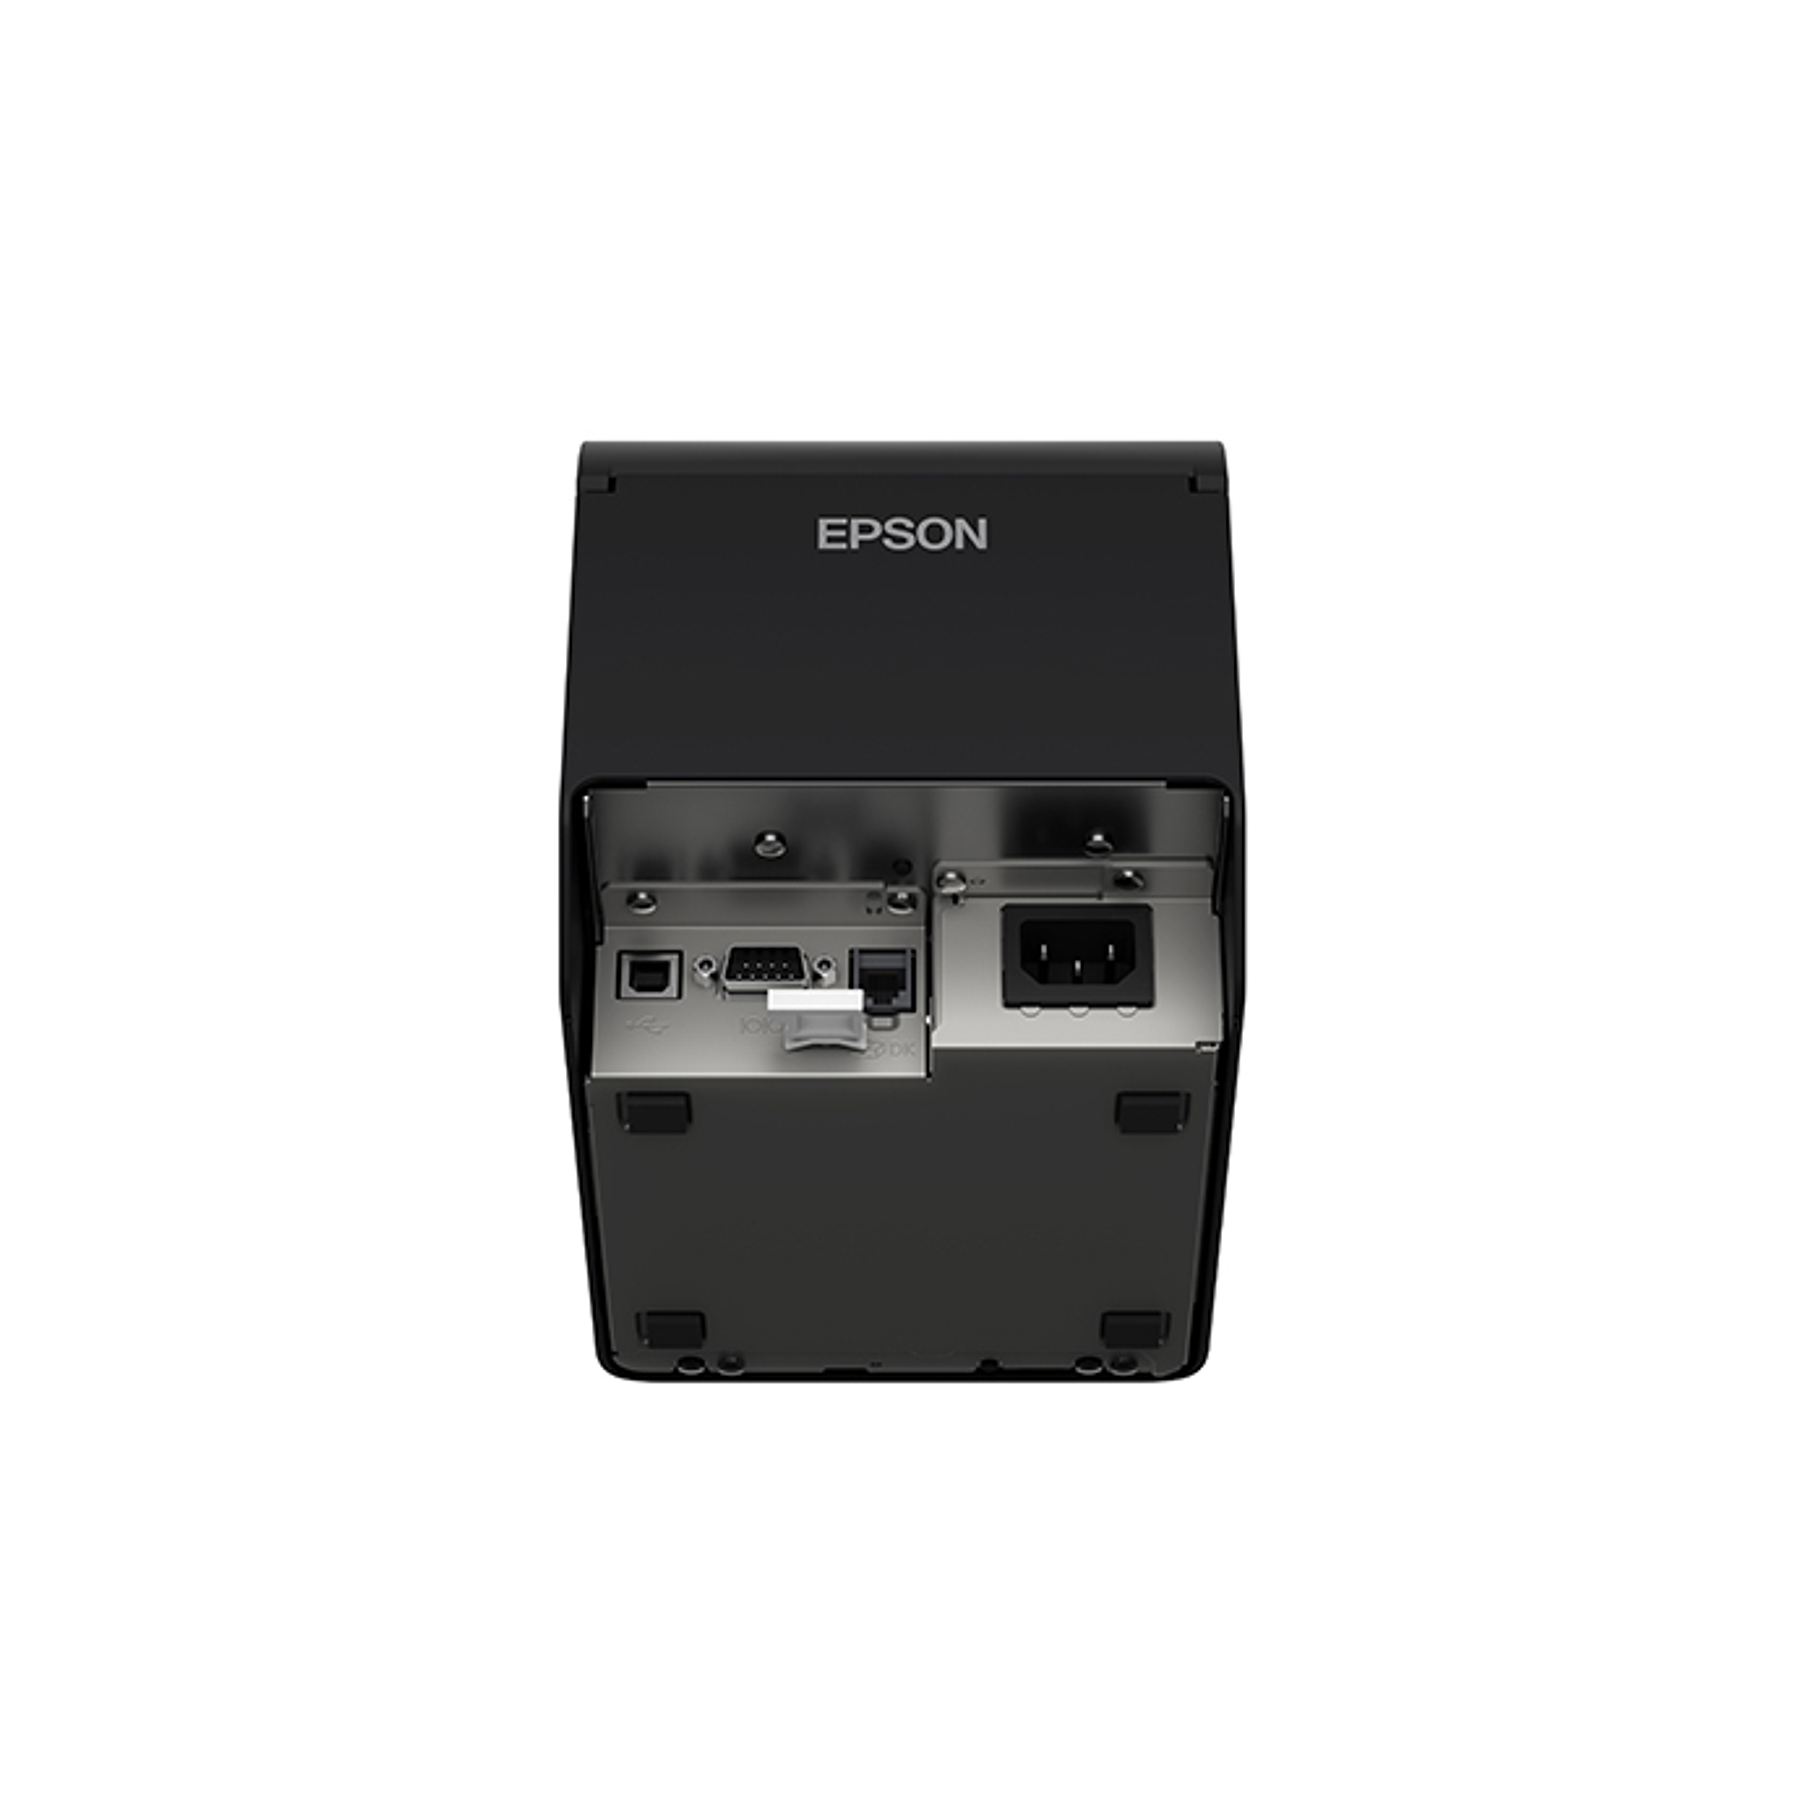 Epson TM-T20IIIL-001 Impresora Térmica 80 mm